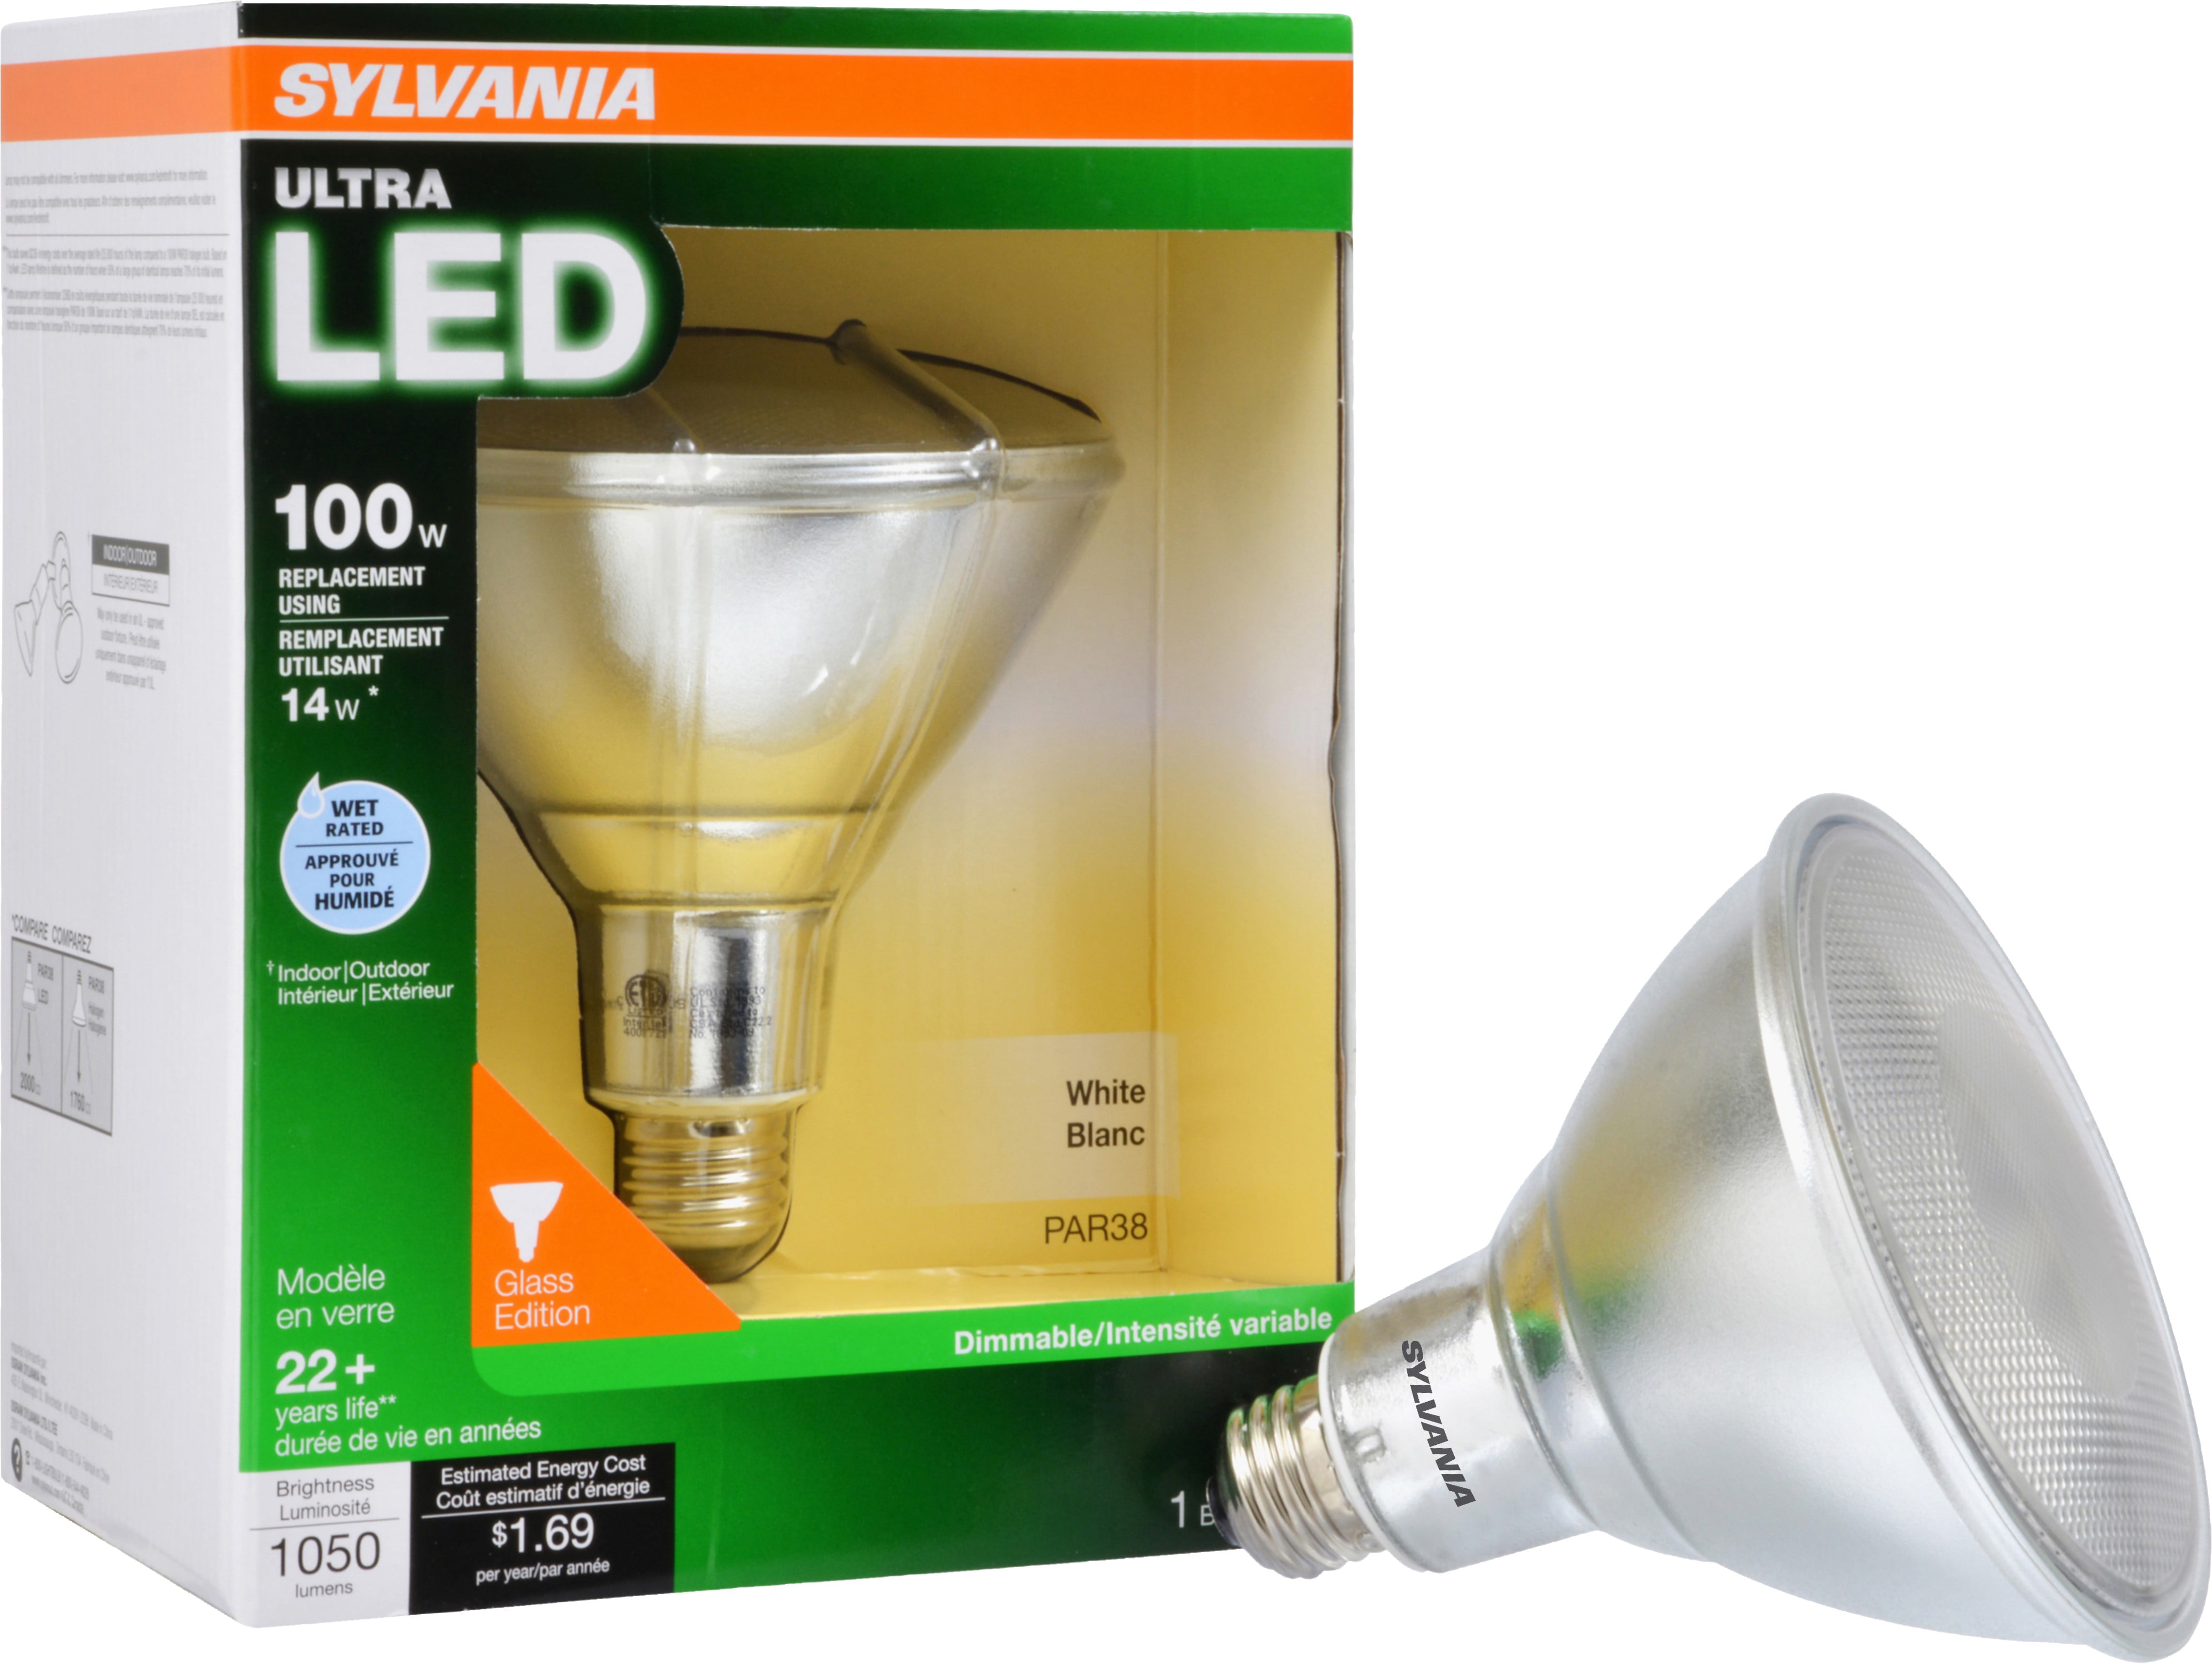 Sylvania Led Flood Light Bulb 14w, Outdoor Led Flood Light Bulbs 500 Watt Equivalent